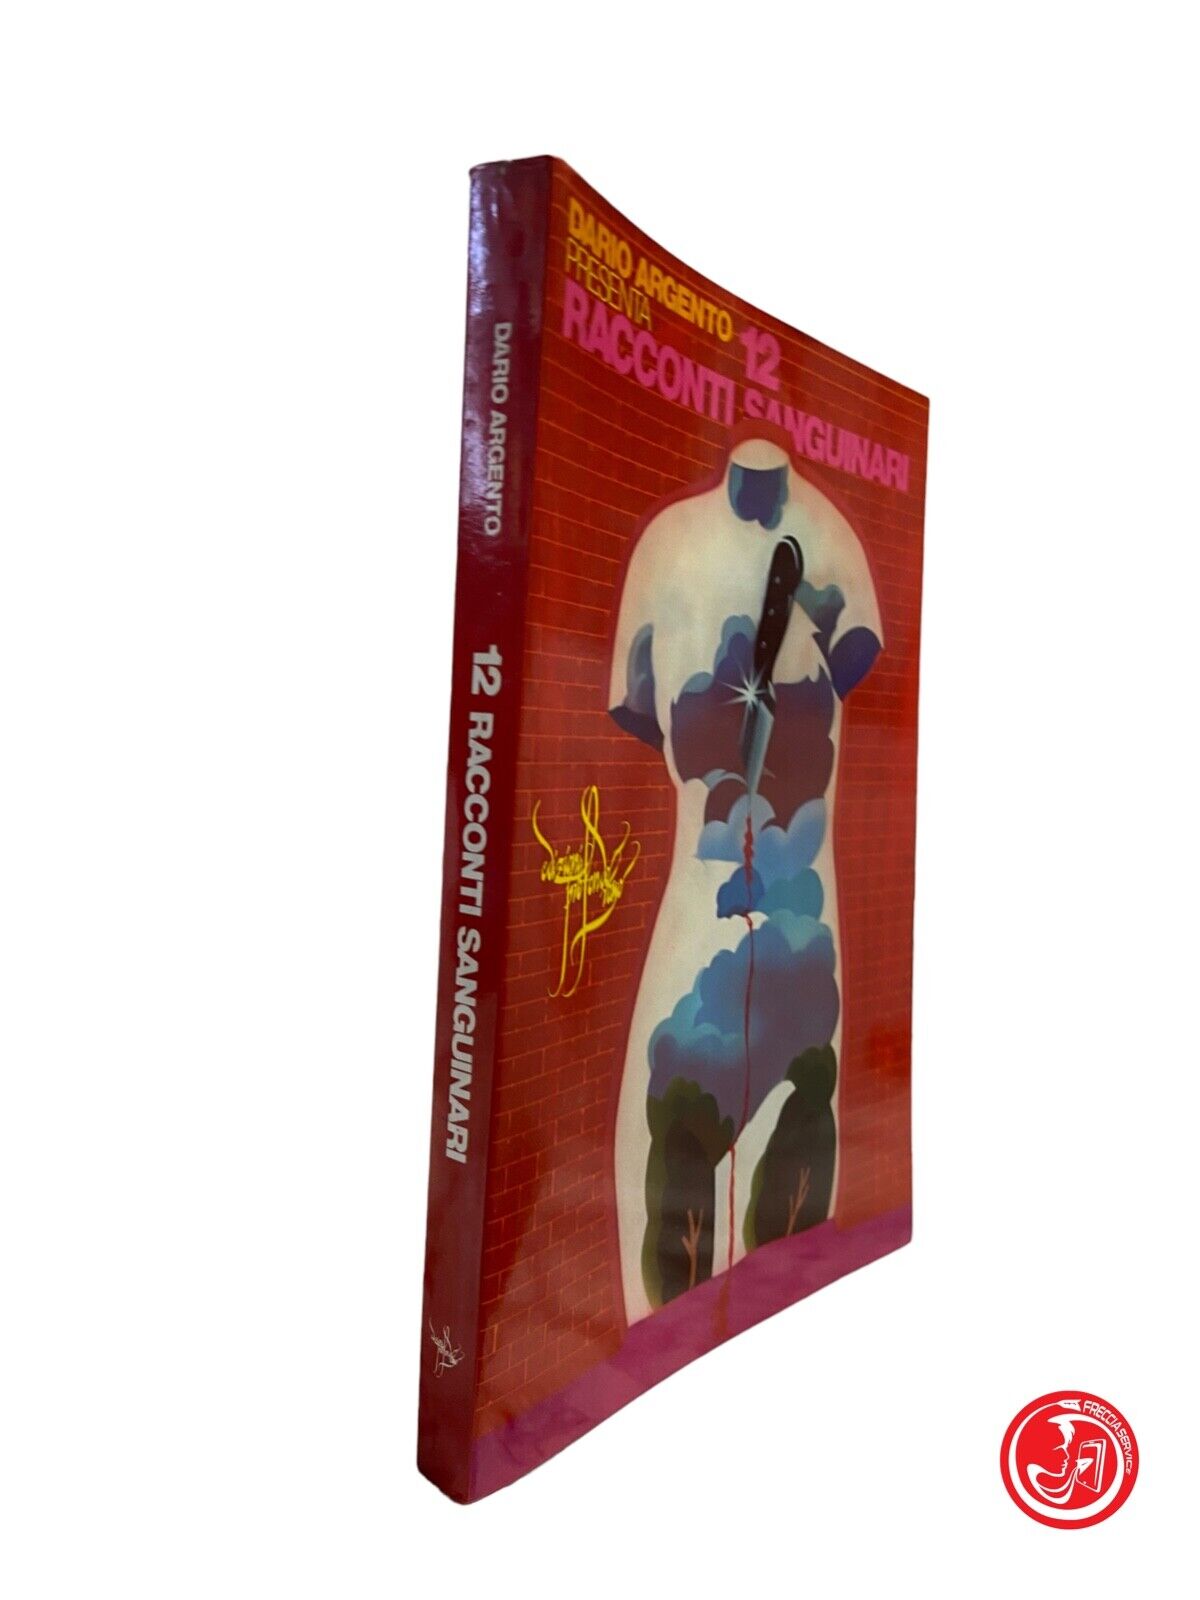 12 contes sanglants - D. Argento - éditions Profondo Rosso, 1976 